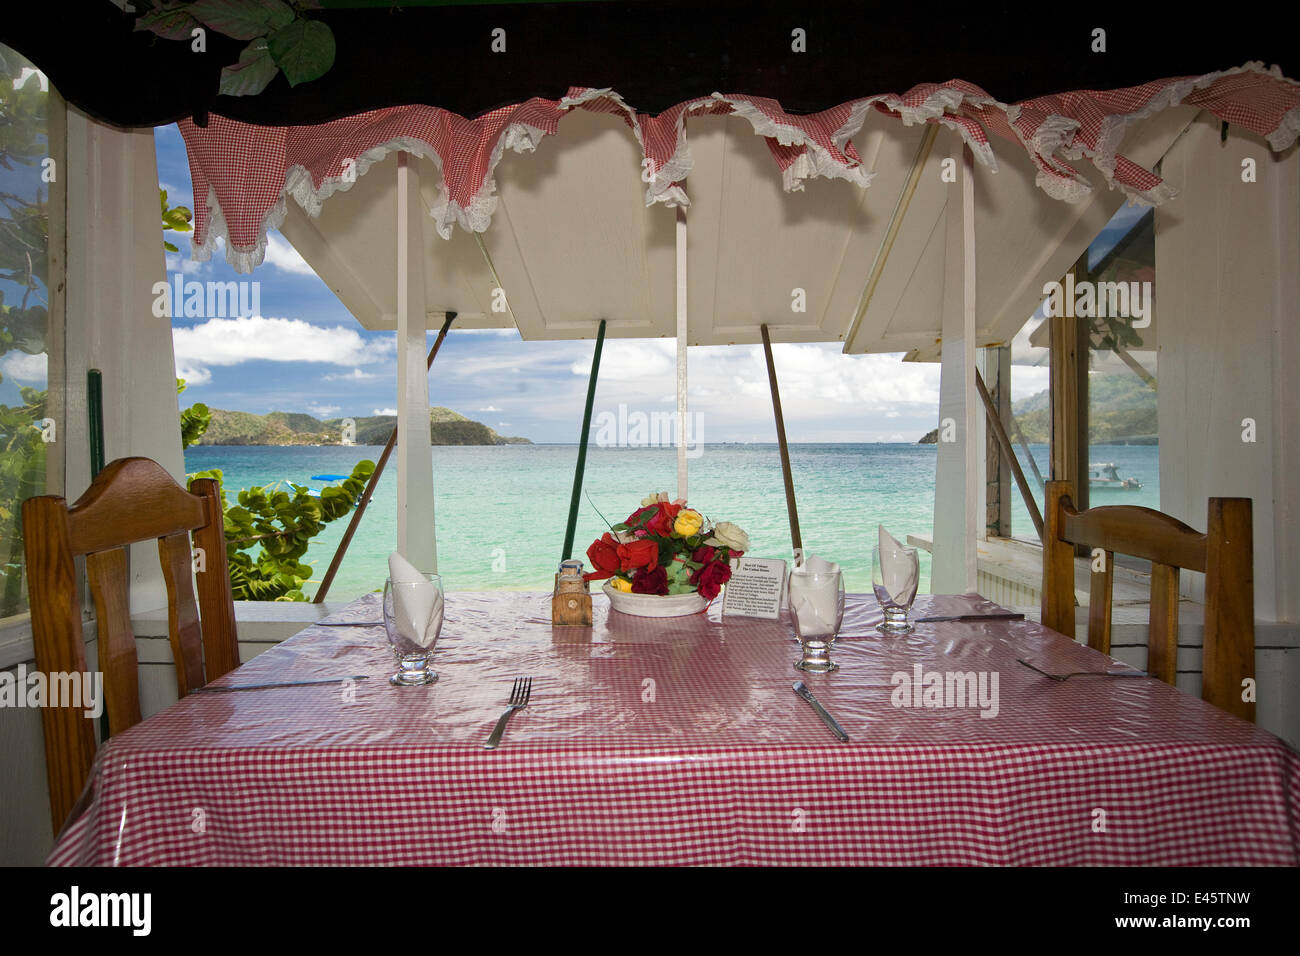 Table pour deux avec vue sur la mer, le restaurant à Jemma (Pas de publication) célèbre pour les aliments locaux. Du côté de l'Atlantique Speyside de Tobago, des Caraïbes. Mars 2008. Banque D'Images